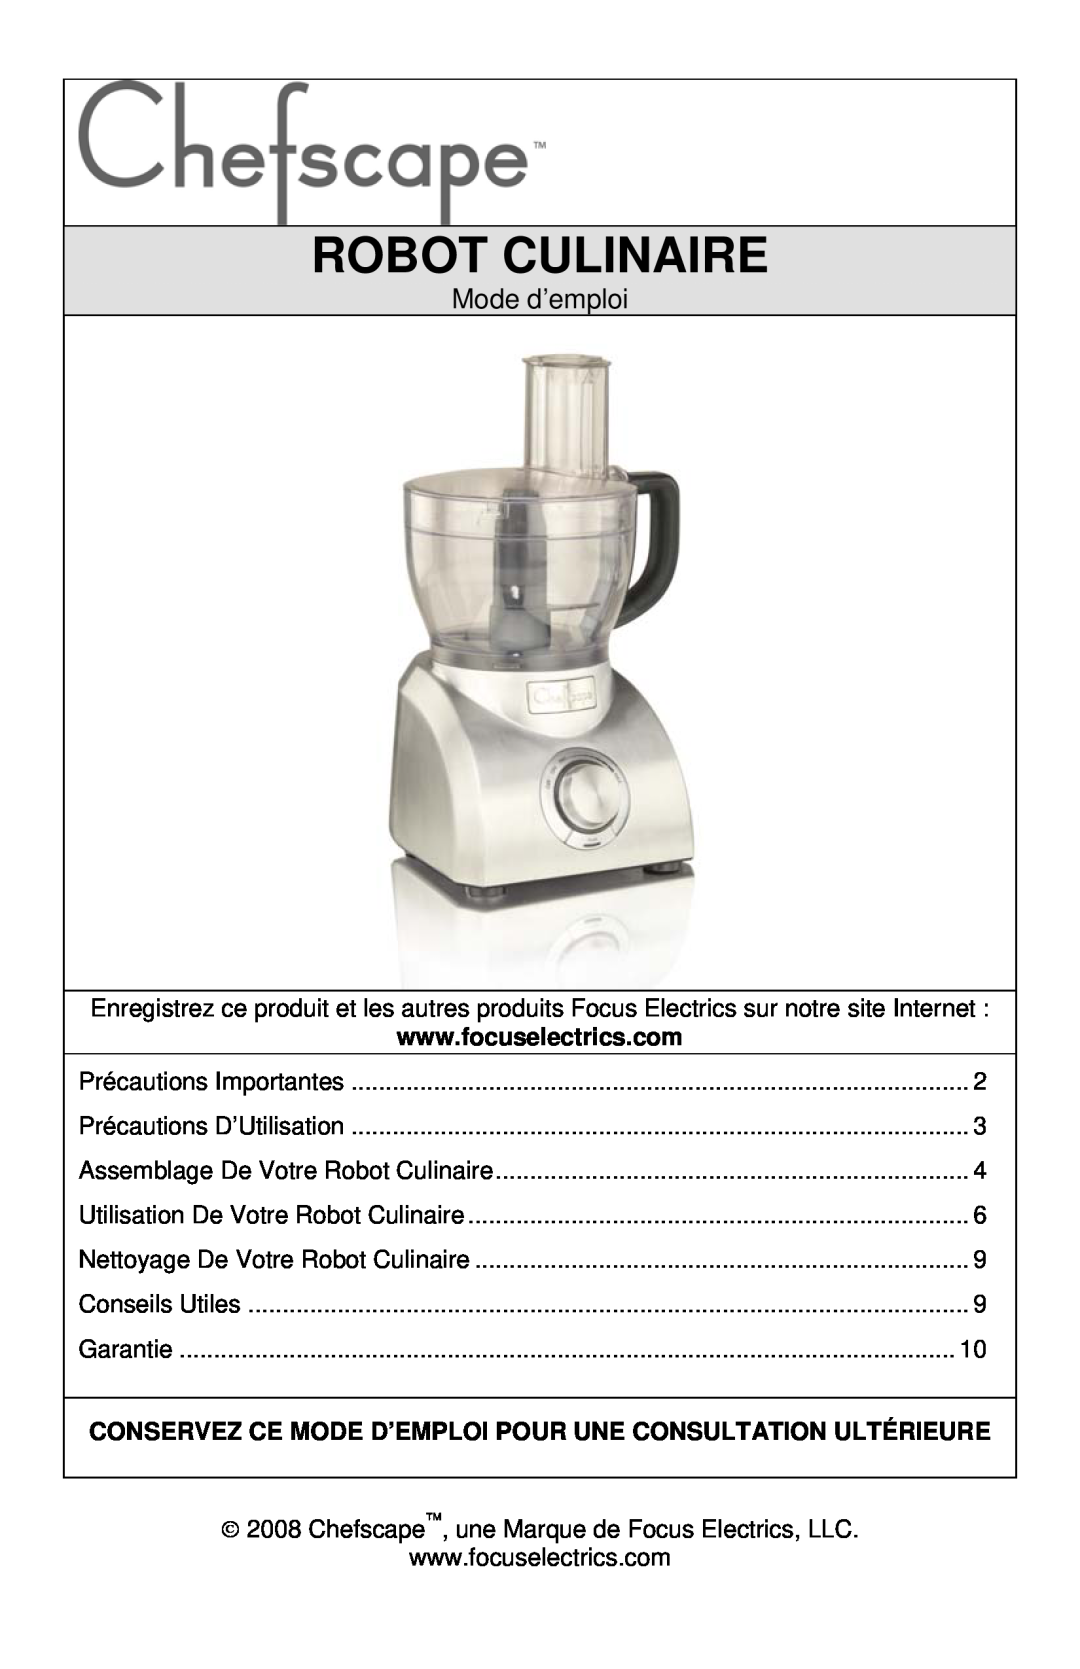 West Bend PRFP1000, L5747 instruction manual Robot Culinaire, Mode d’emploi 